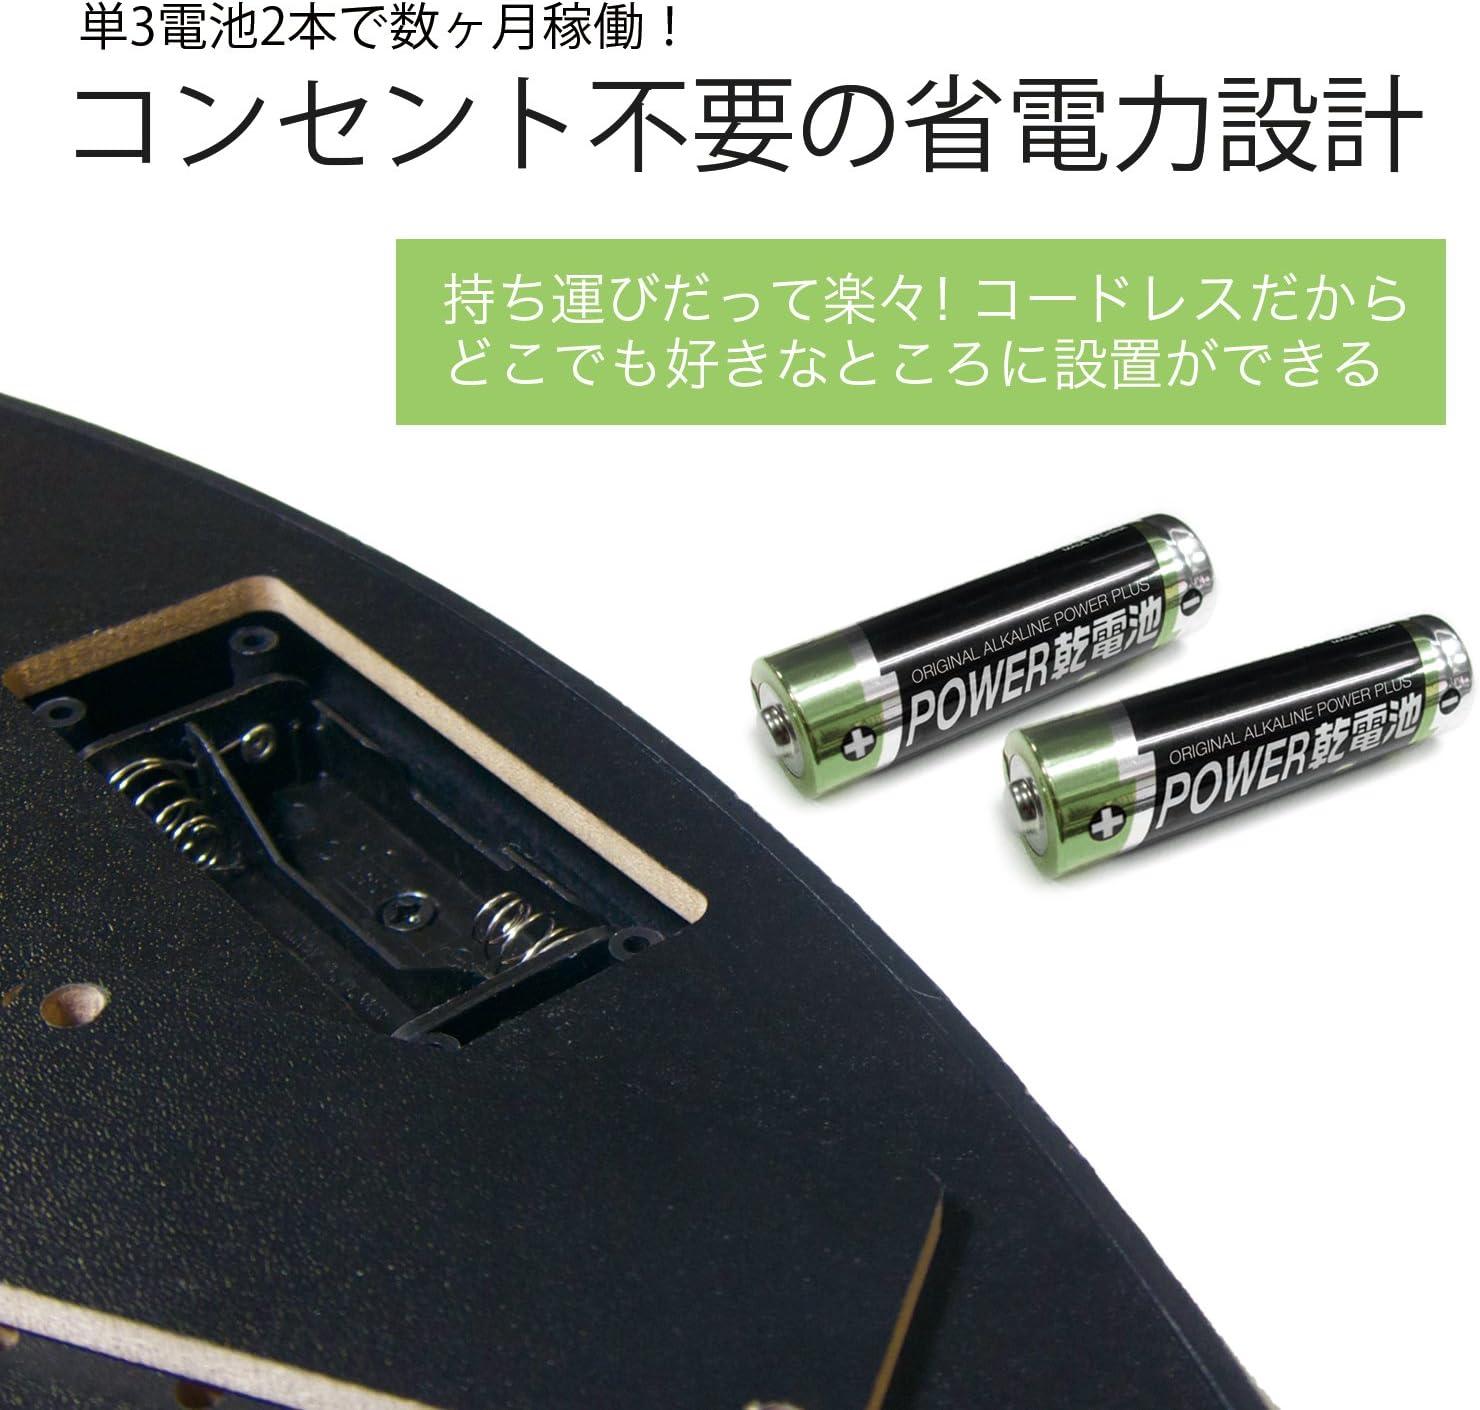 Gran Board Dash Electronic Dartboard - Green